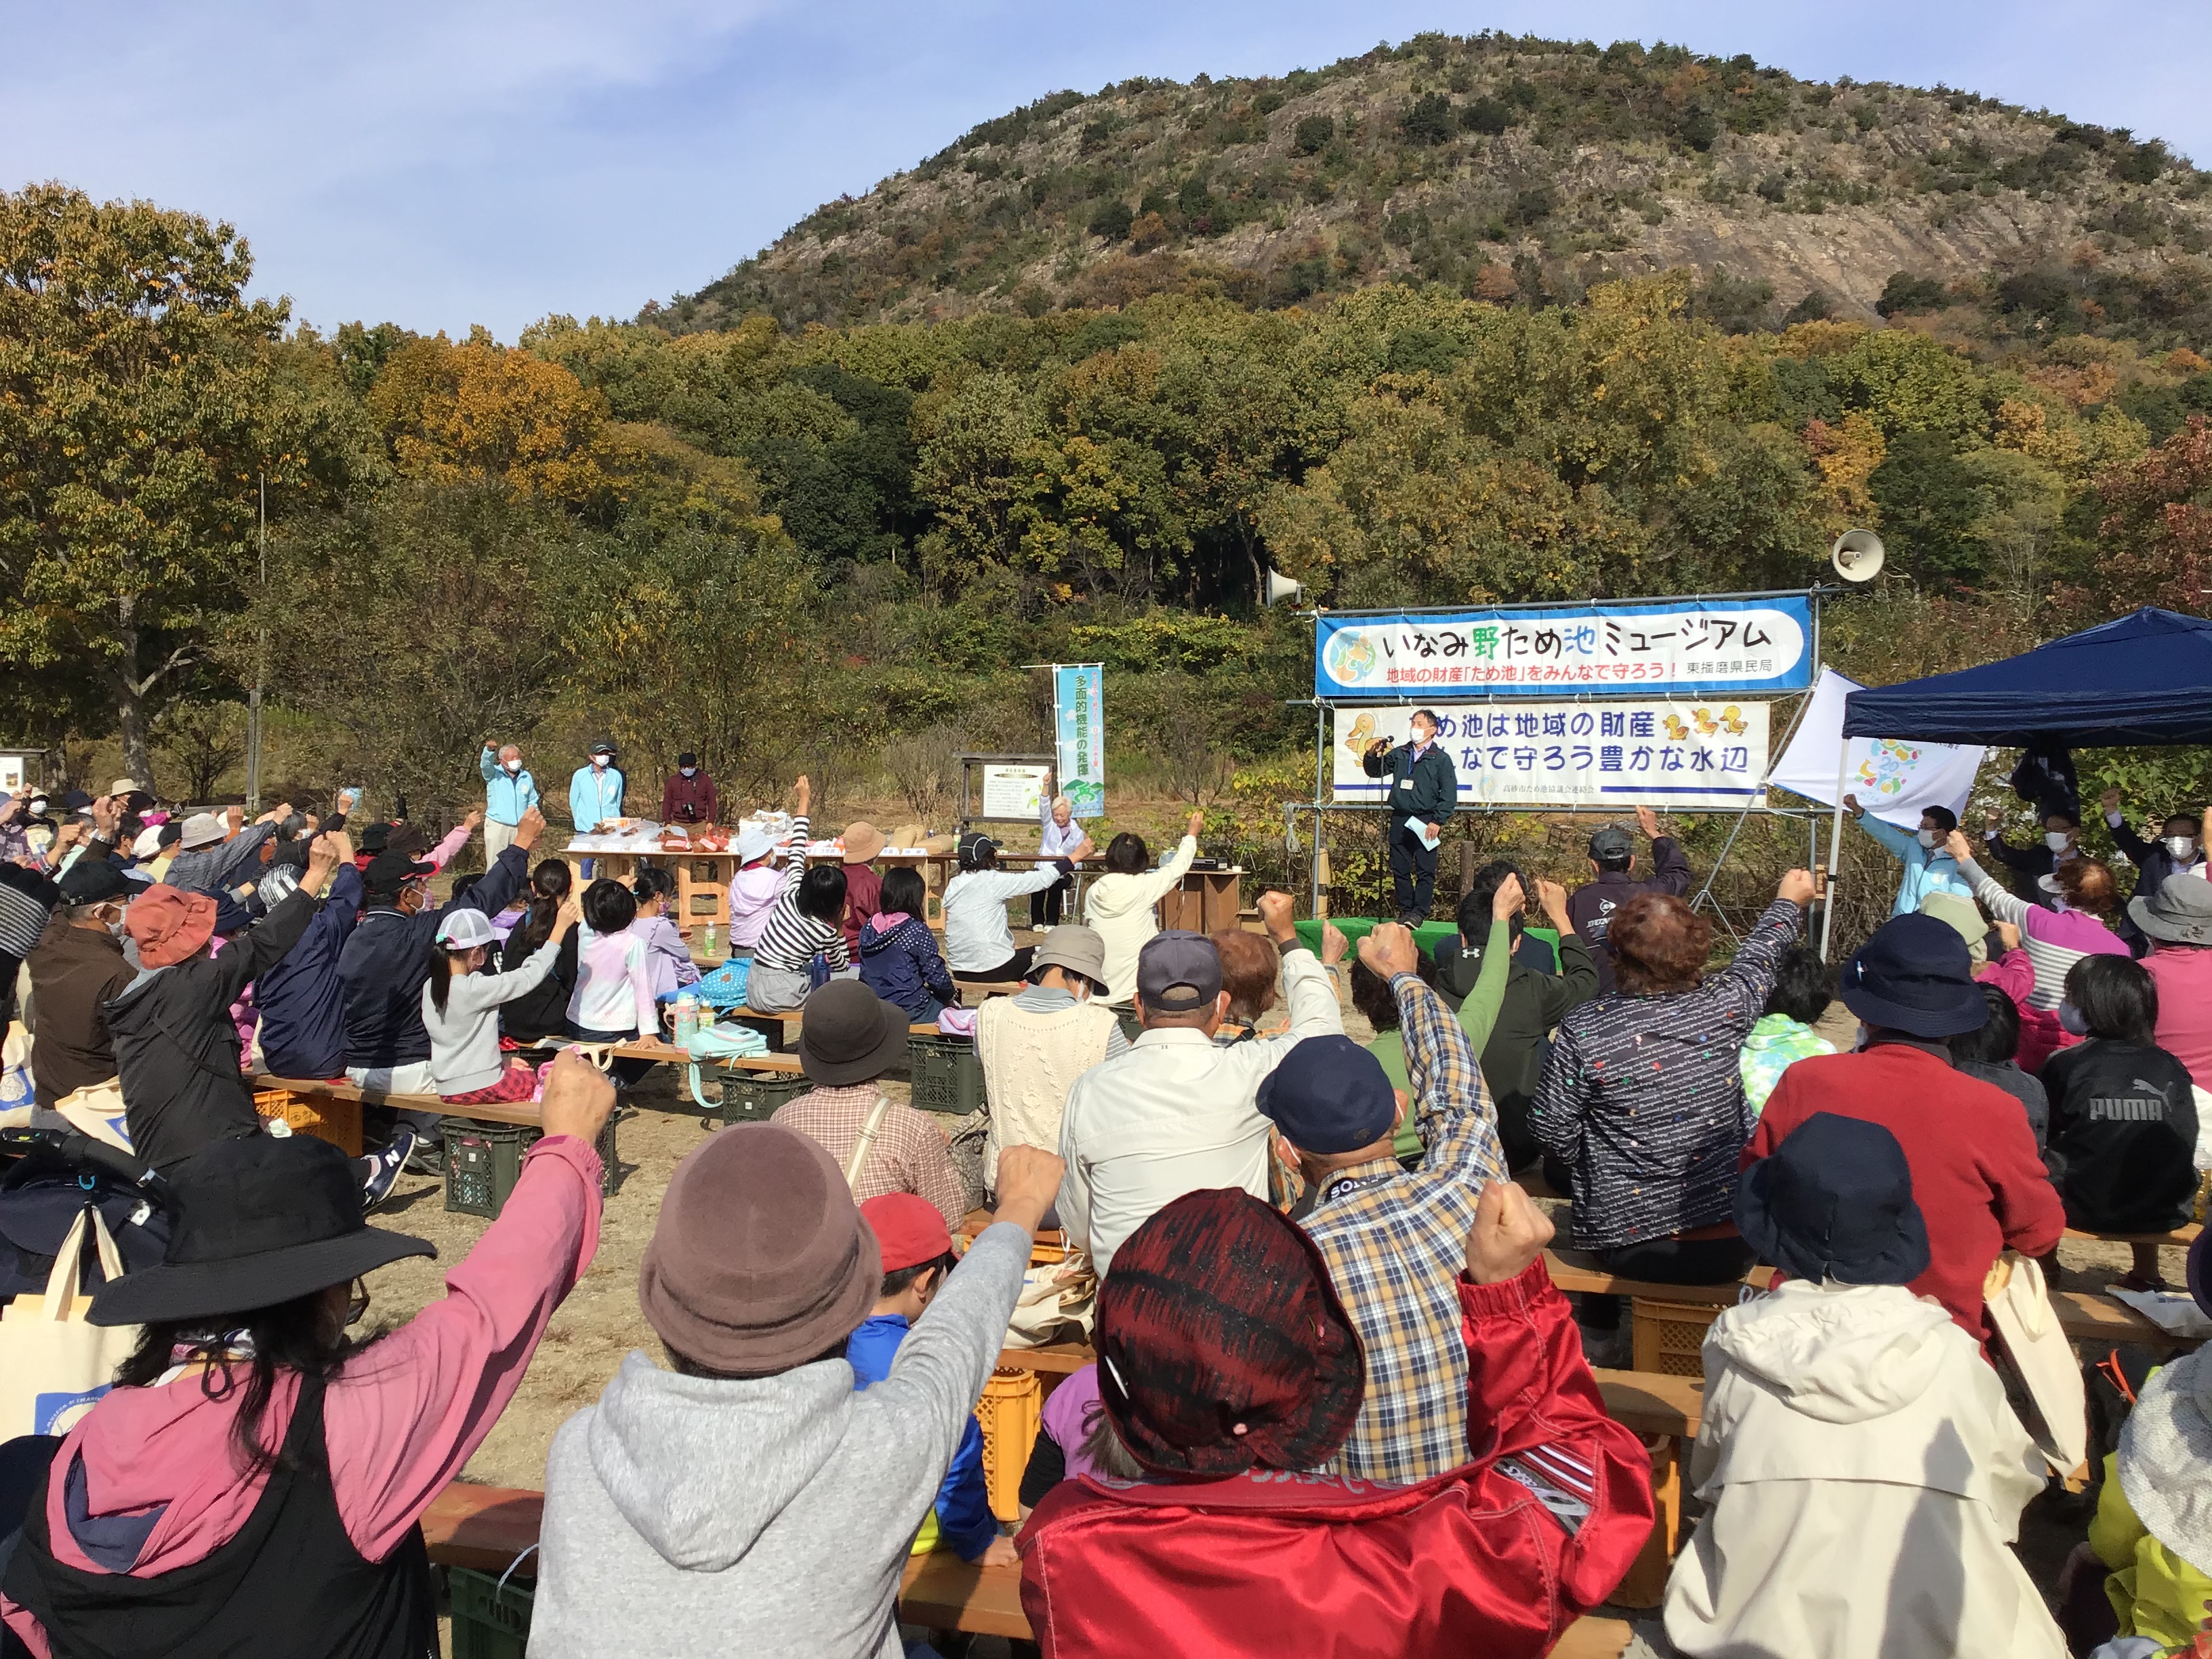 『兵庫のため池は僕たちが守るぞー。』の勝ち鬨を上げる小川東播磨県民局長。参加者も気勢を上げてます。盛り上がって来ました。